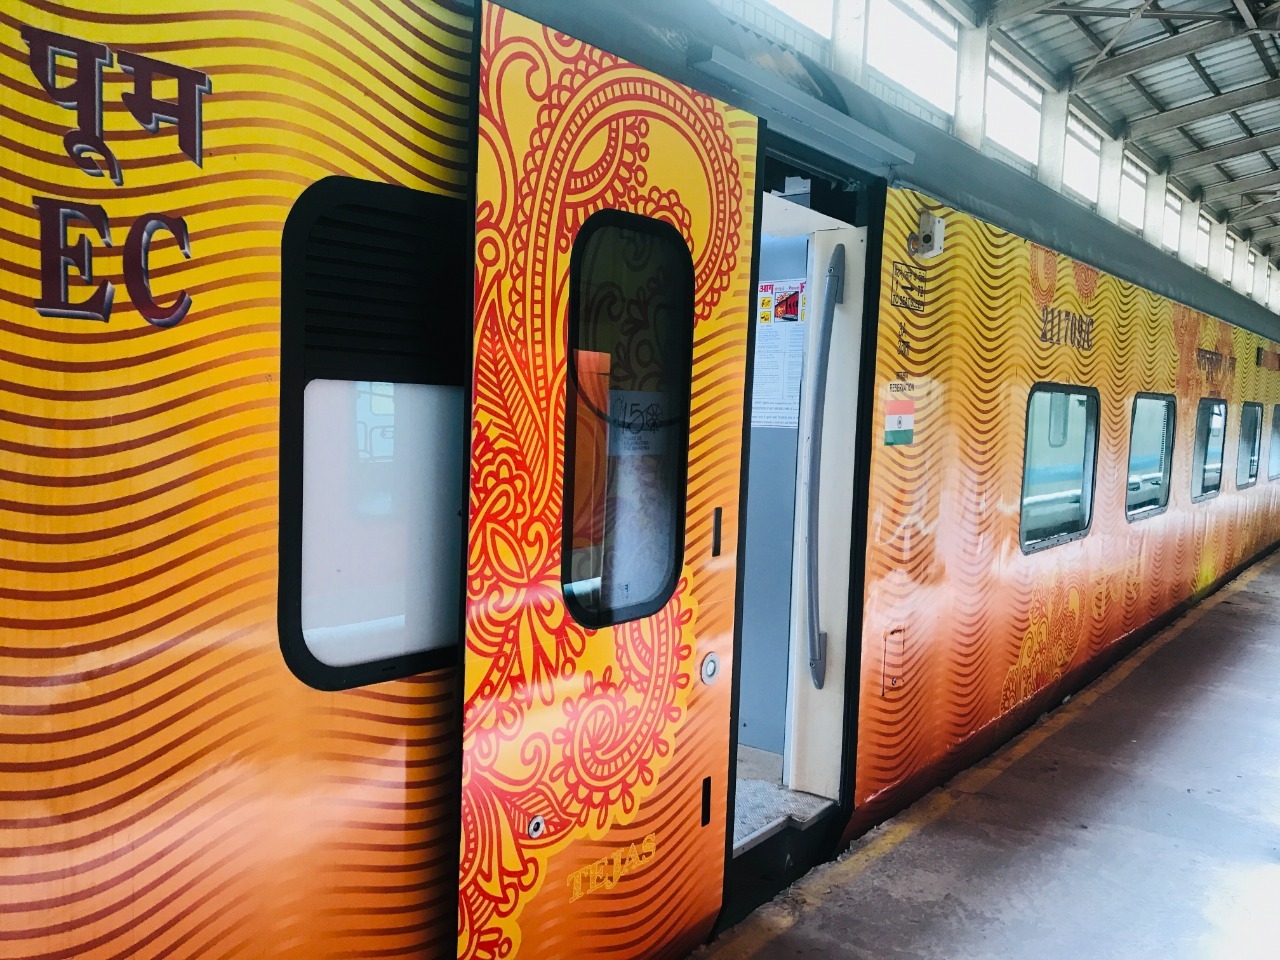 तेजस रेक से चलेगी नई दिल्ली राजधानी एक्सप्रेस स्पेशल ट्रेन, यात्रियों को मिलेंगी कई अत्याधुनिक सुविधाएं | New India Times